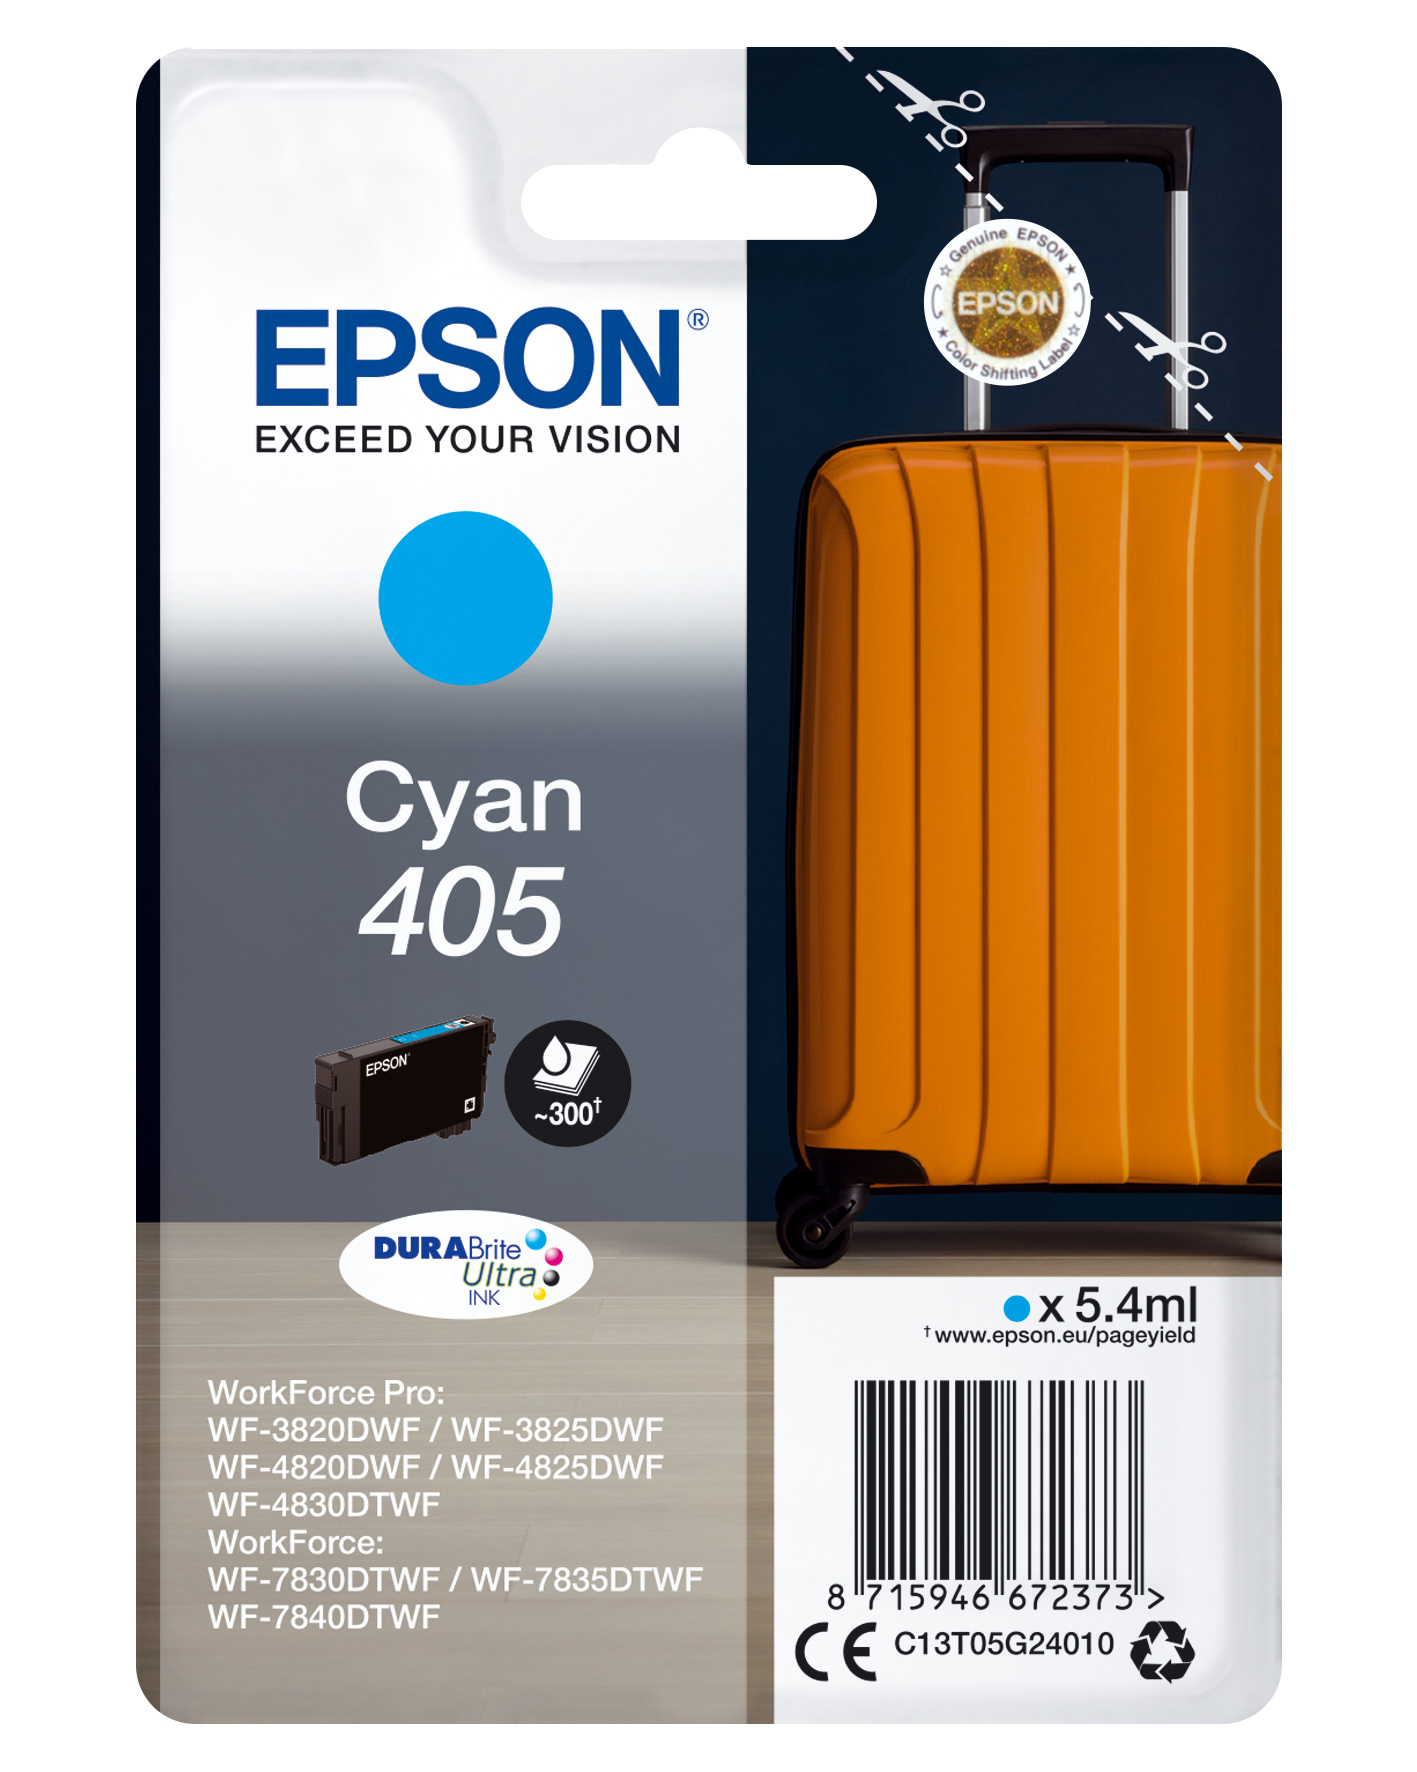 Epson Singlepack Cyan 405 DURABrite Ultra Ink - Standardertrag - Tinte auf Pigmentbasis - 5,4 ml - 1 Stück(e) - Einzelpackung